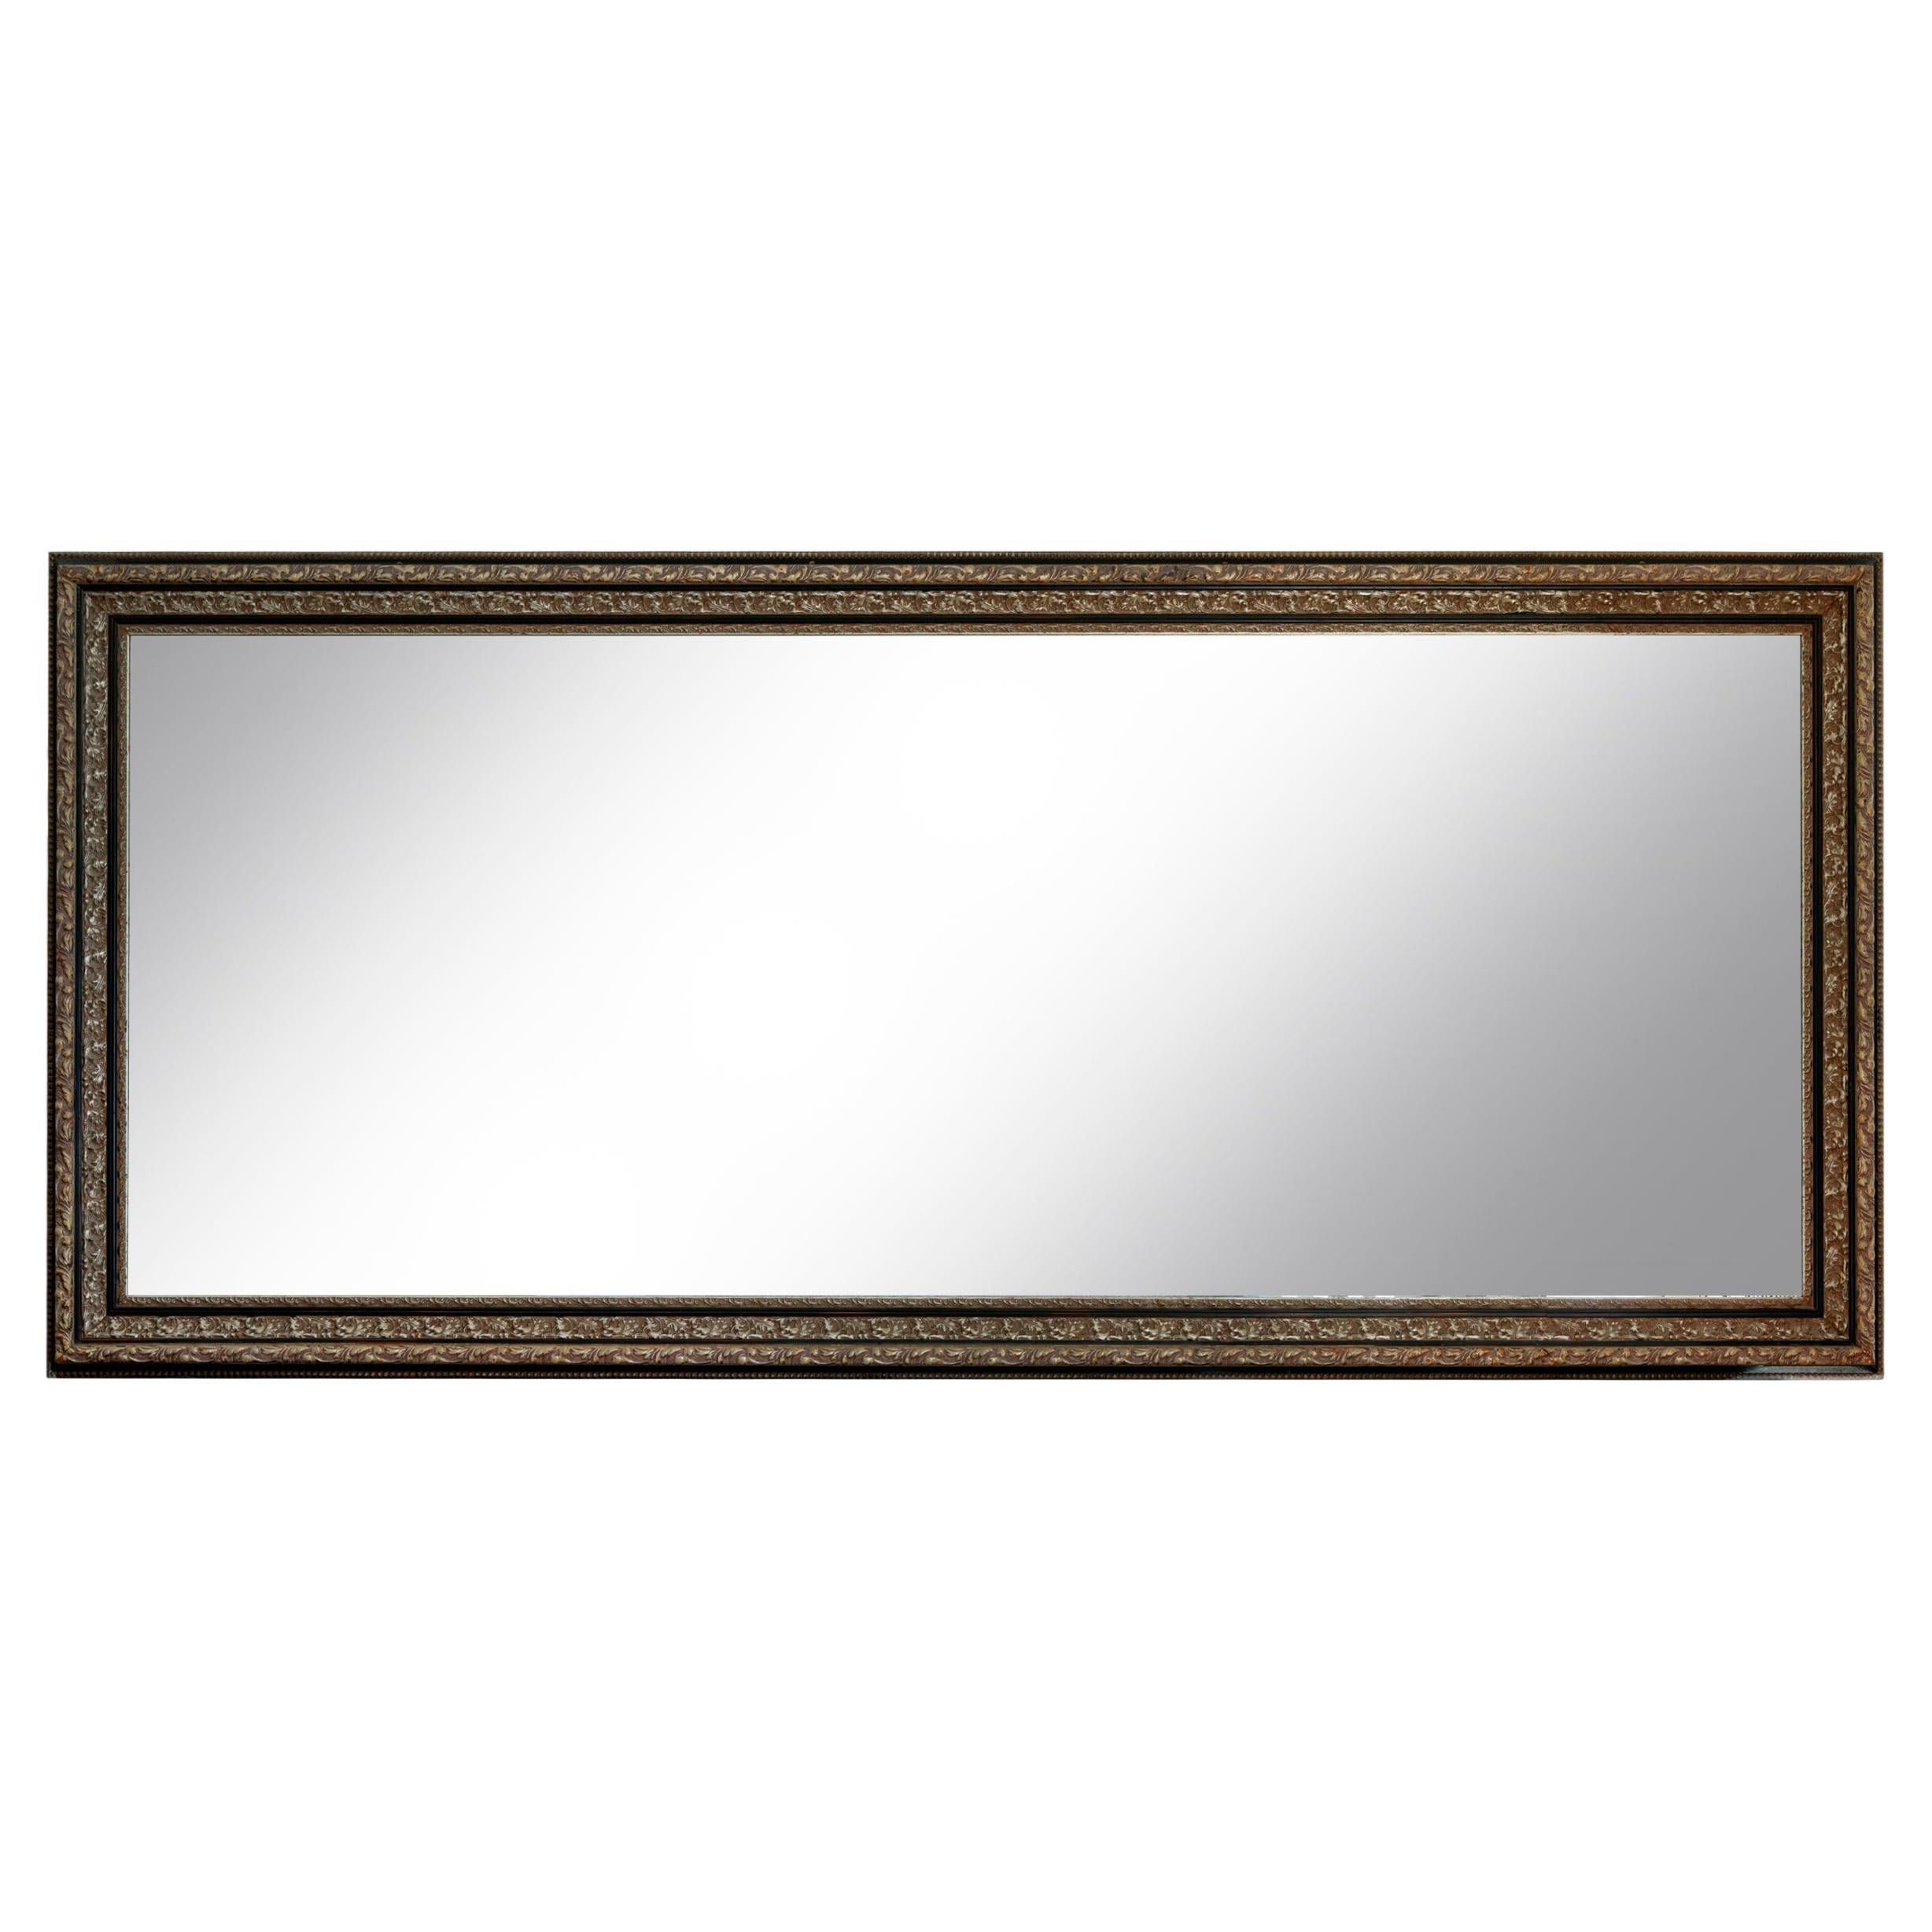 Miroir rectangulaire monumental en bois sculpté et doré à la feuille d'argent. Le miroir rectangulaire long et étroit est doté d'un magnifique cadre sculpté. Une pièce importante pour un grand espace, comme miroir de sol sur pied ou horizontalement